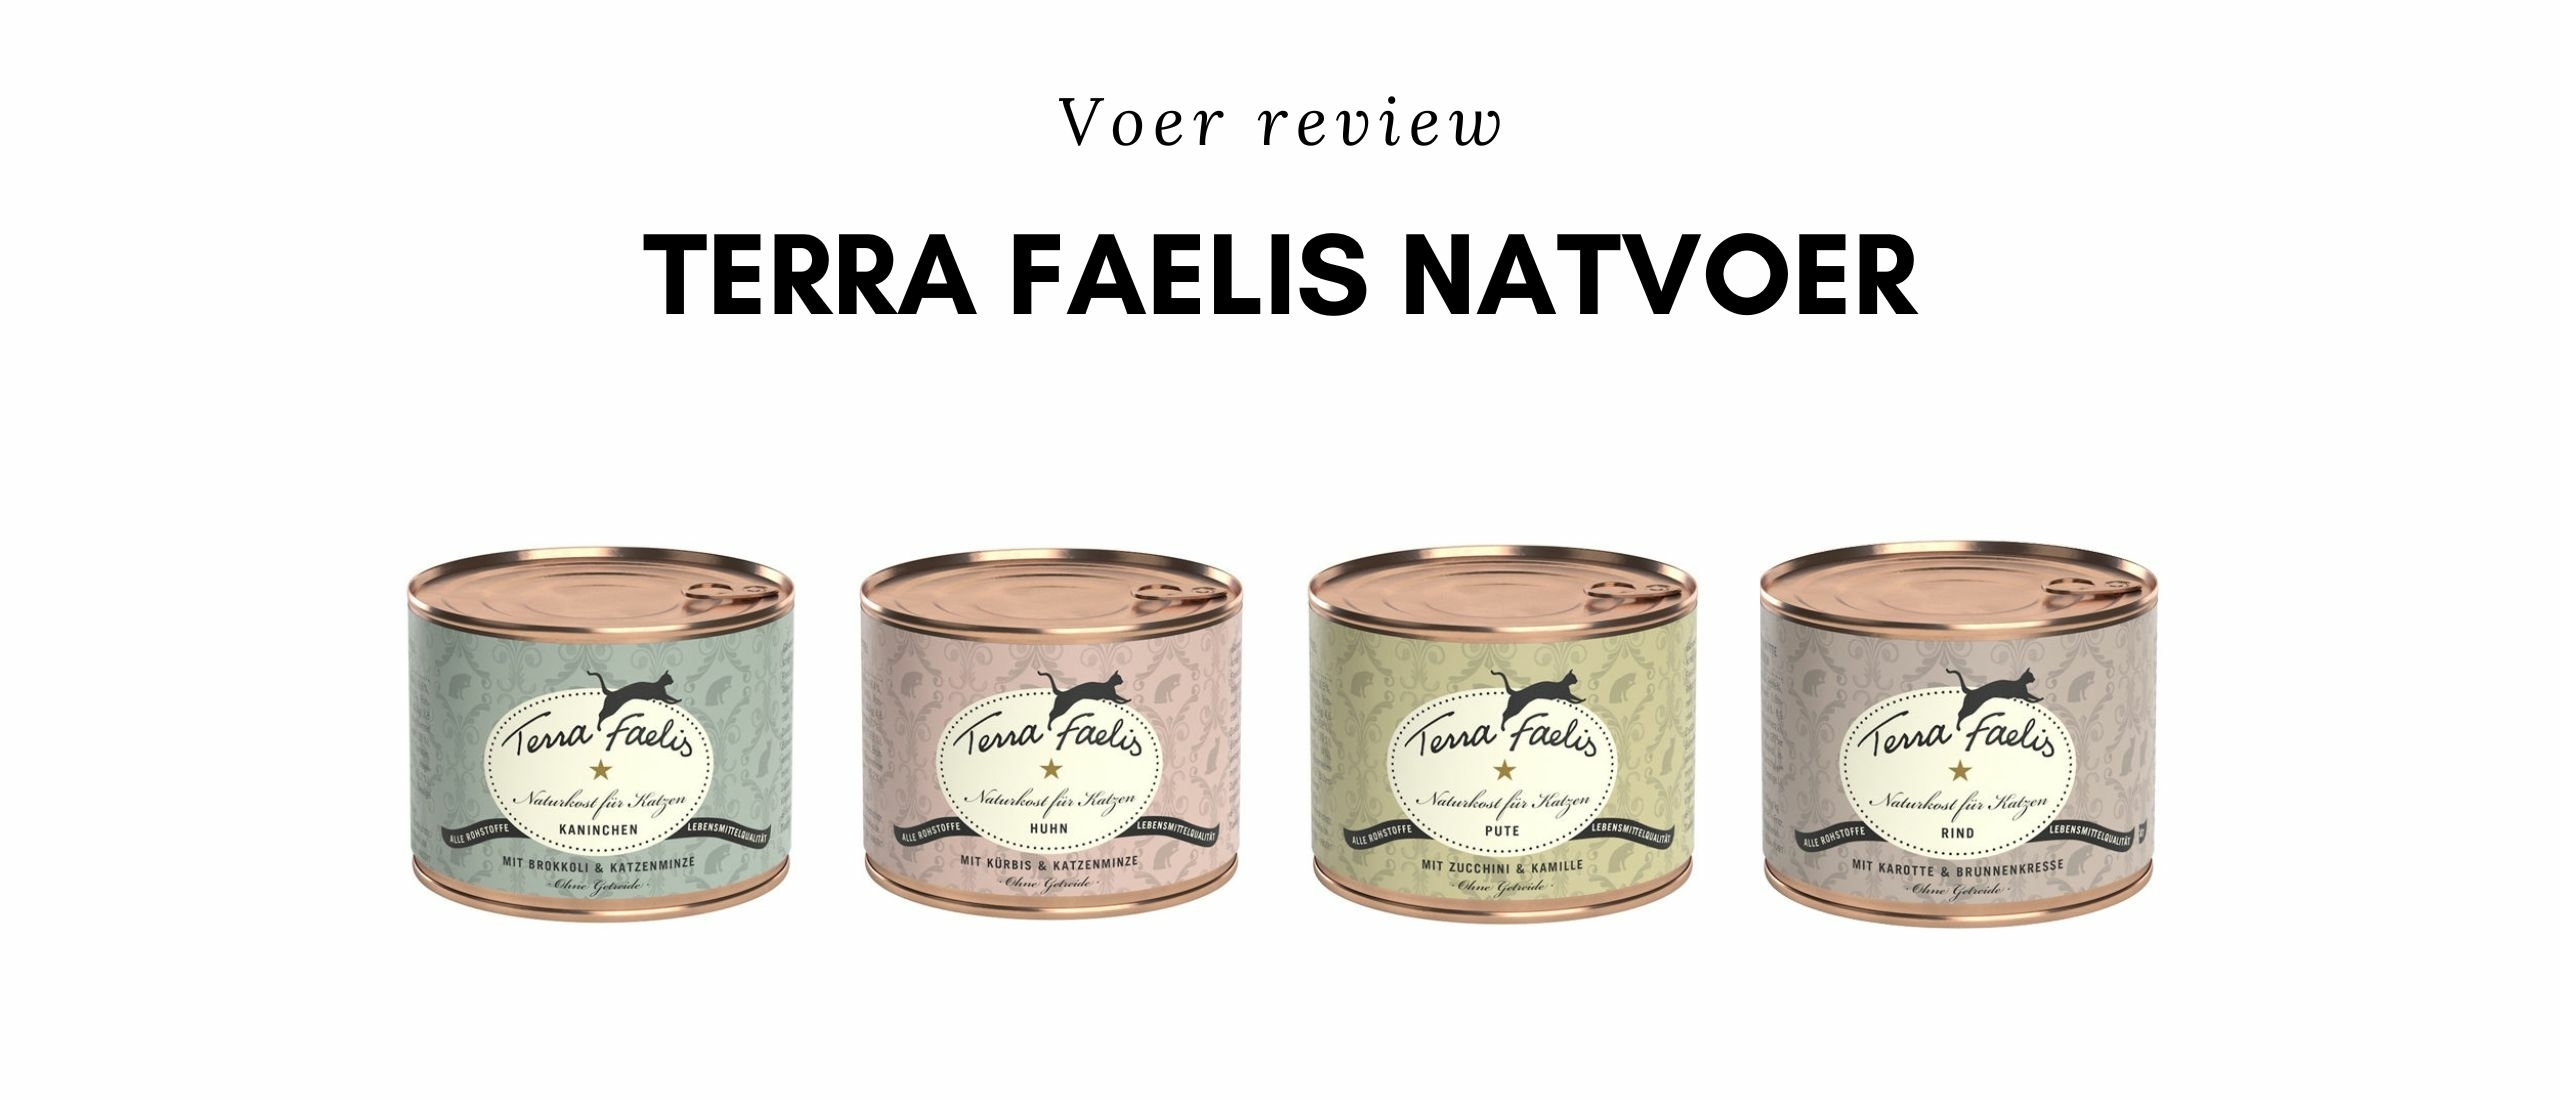 Voer review Terra Faelis Natvoer